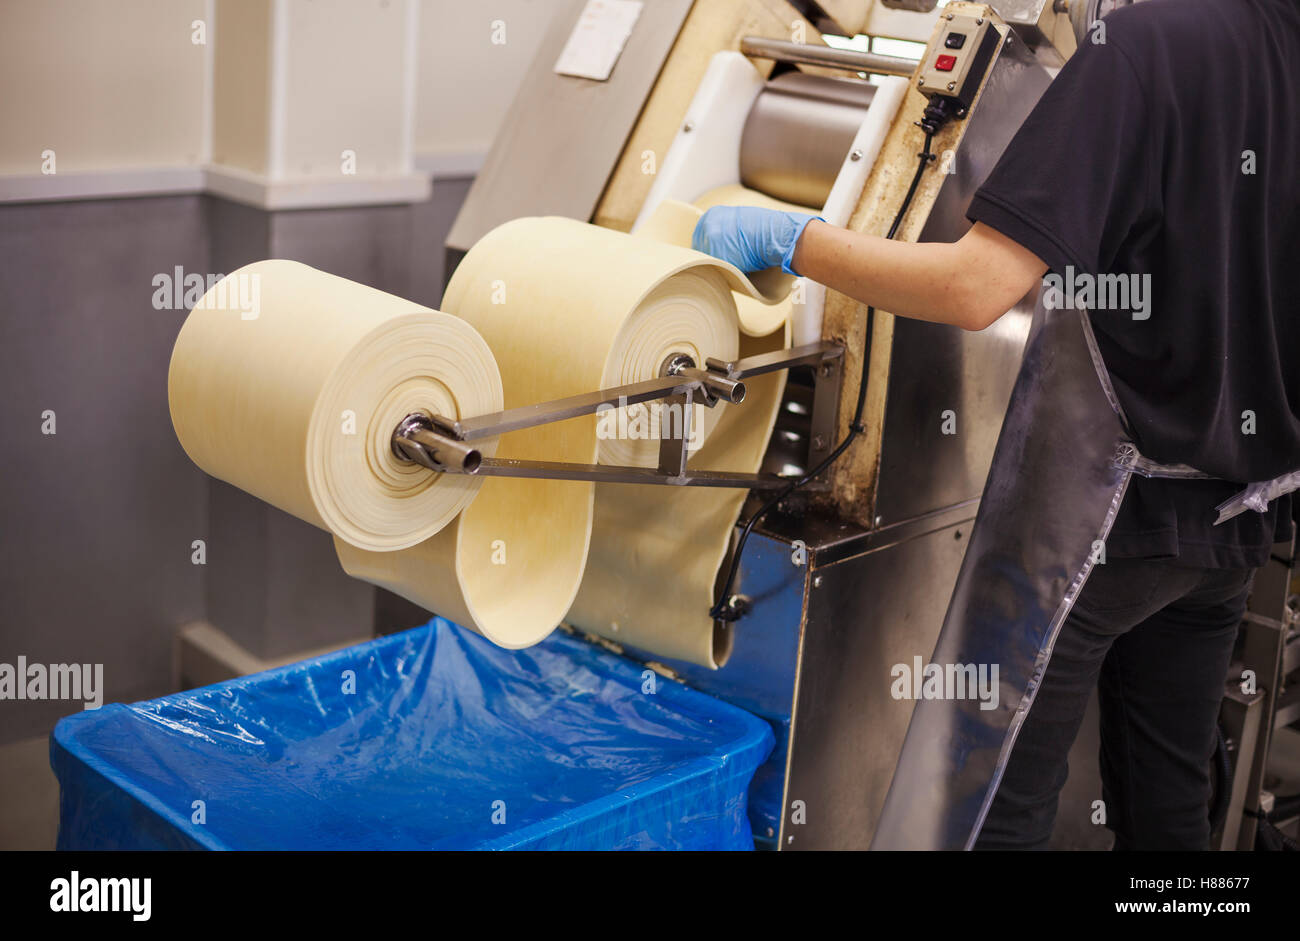 Eine Soba-Nudel-Factory.  Blätter frische Nudel Teig durch eine große Pressmaschine übergeben wird. Stockfoto